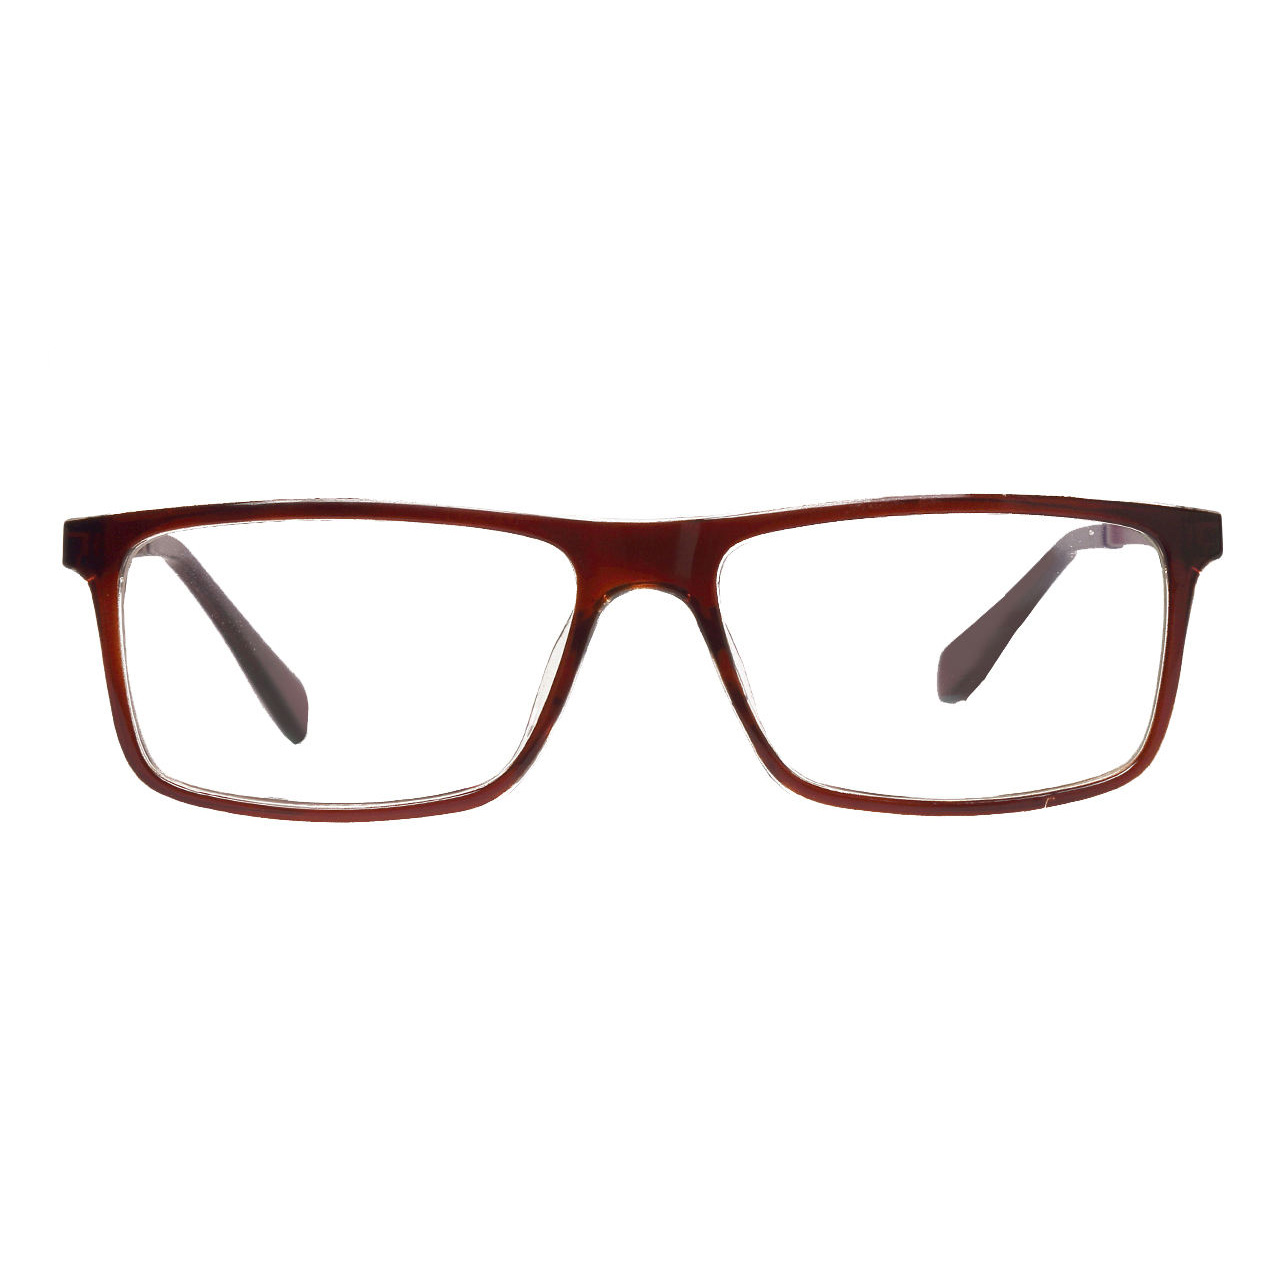 فریم عینک طبی مدل jsh72320011